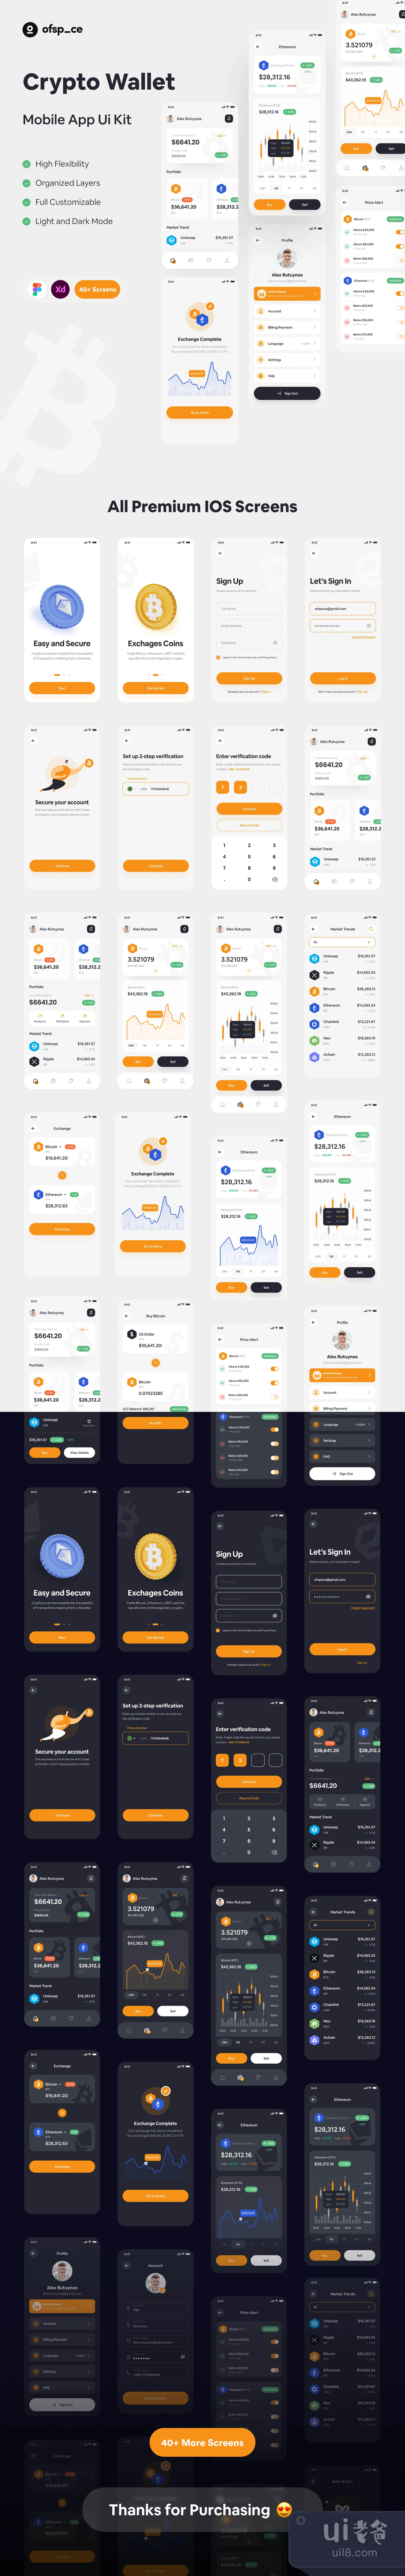 加密货币钱包应用设计UI套件 (Crypto Wallet App Design UI Kit)插图1